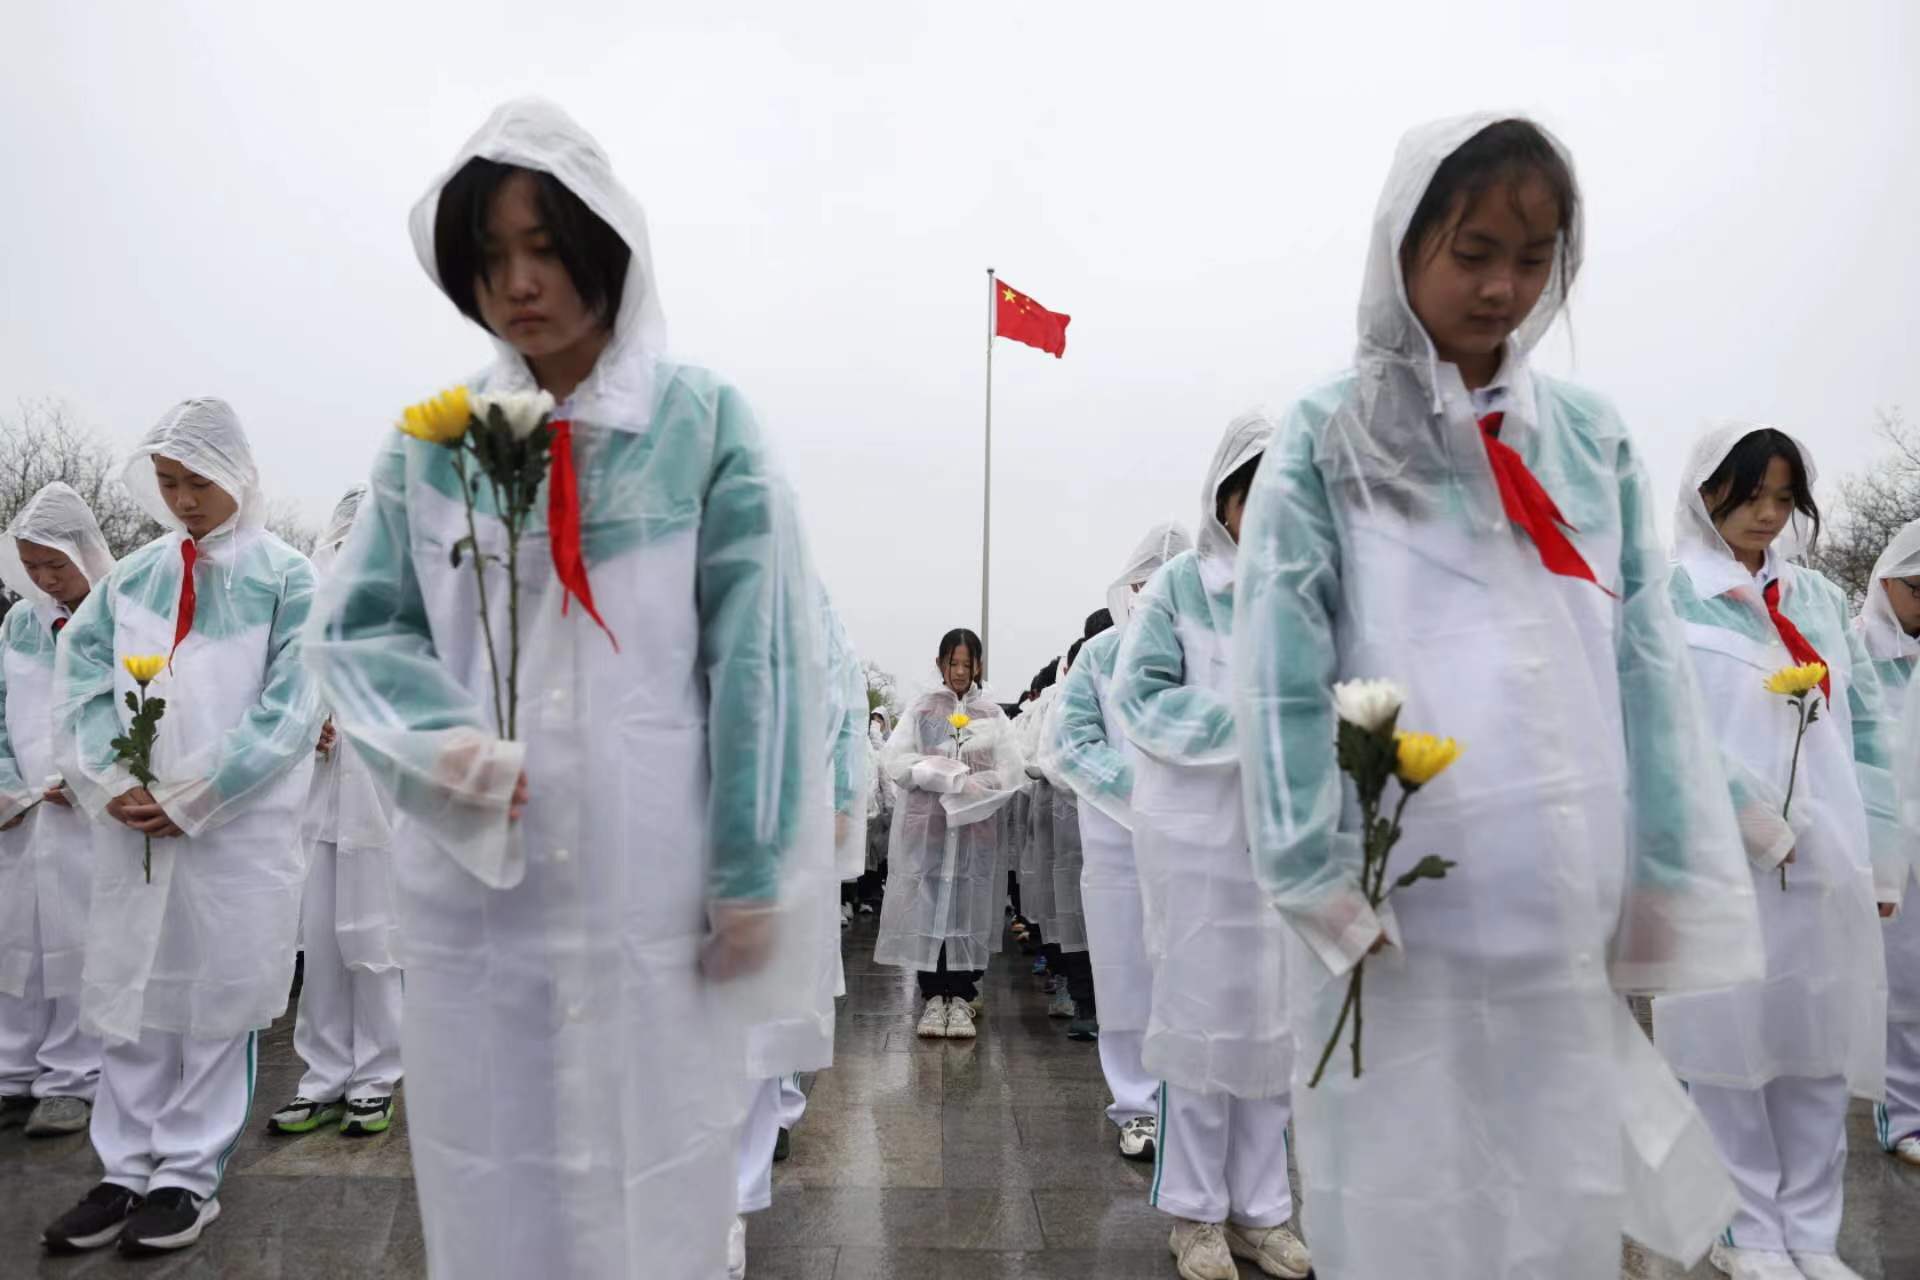 快手云蹦迪
:“清明节的铭记”主题教育系列活动启动仪式在抗战馆举行